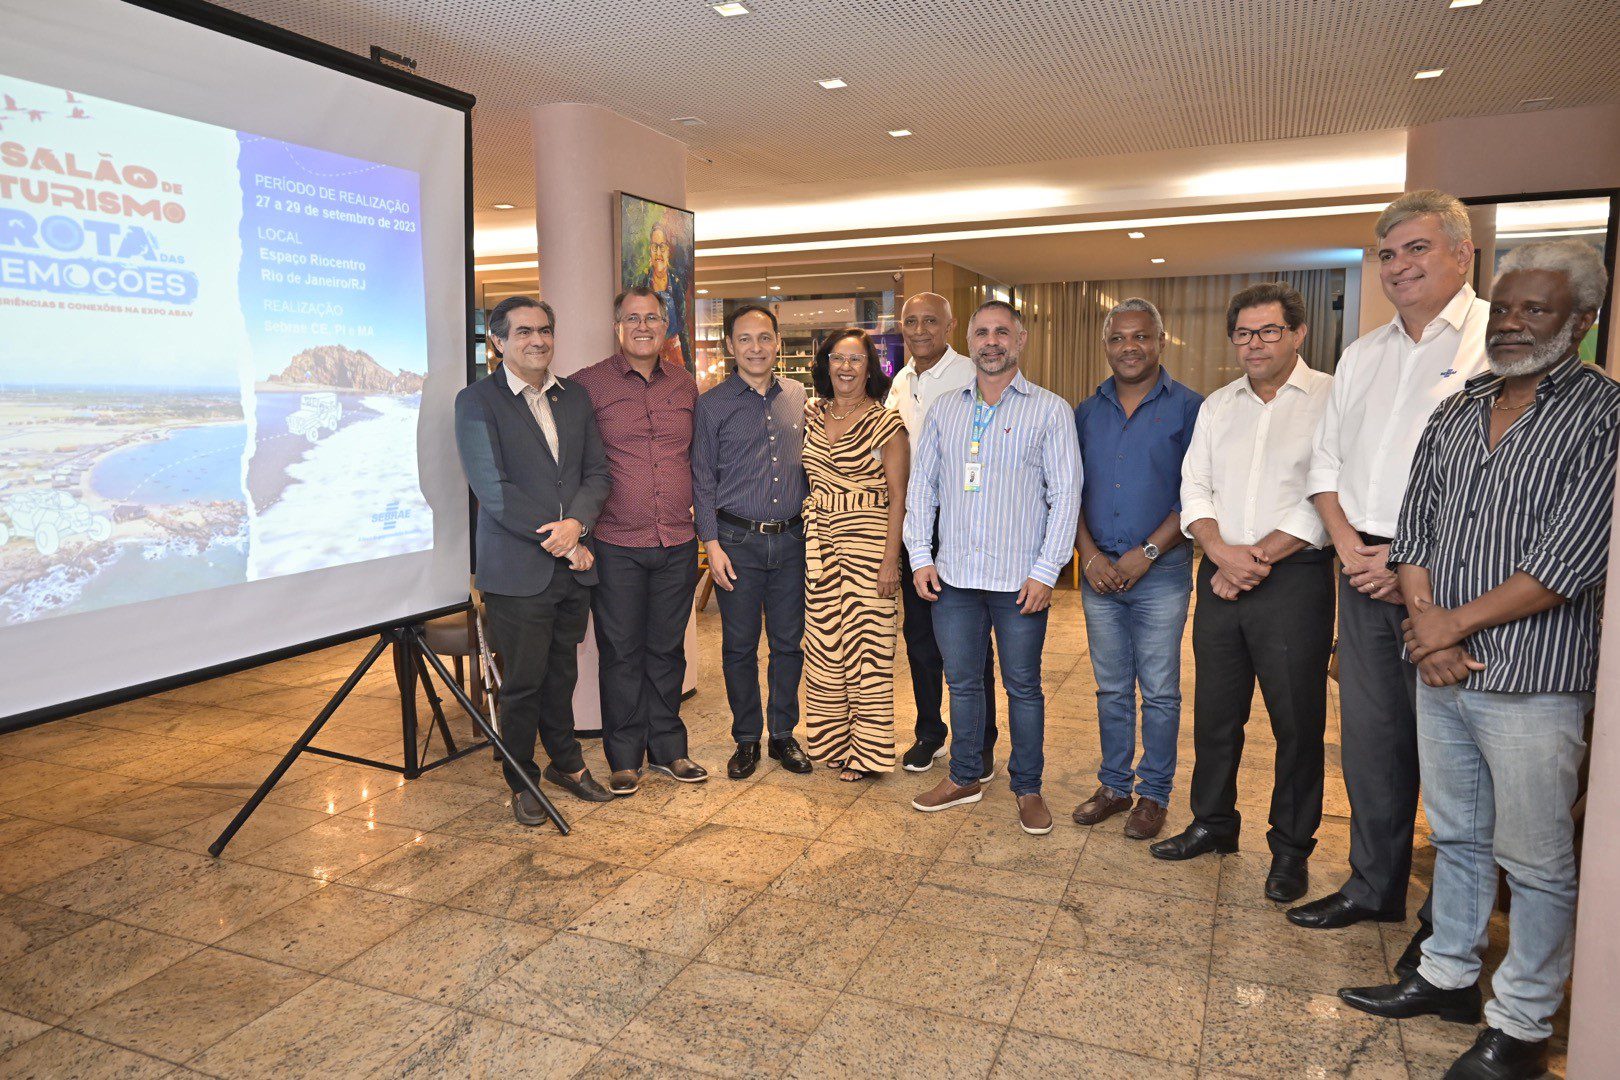 Sebrae apresenta 6º Salão de Turismo da Rota das Emoções para trade turístico de São Luís